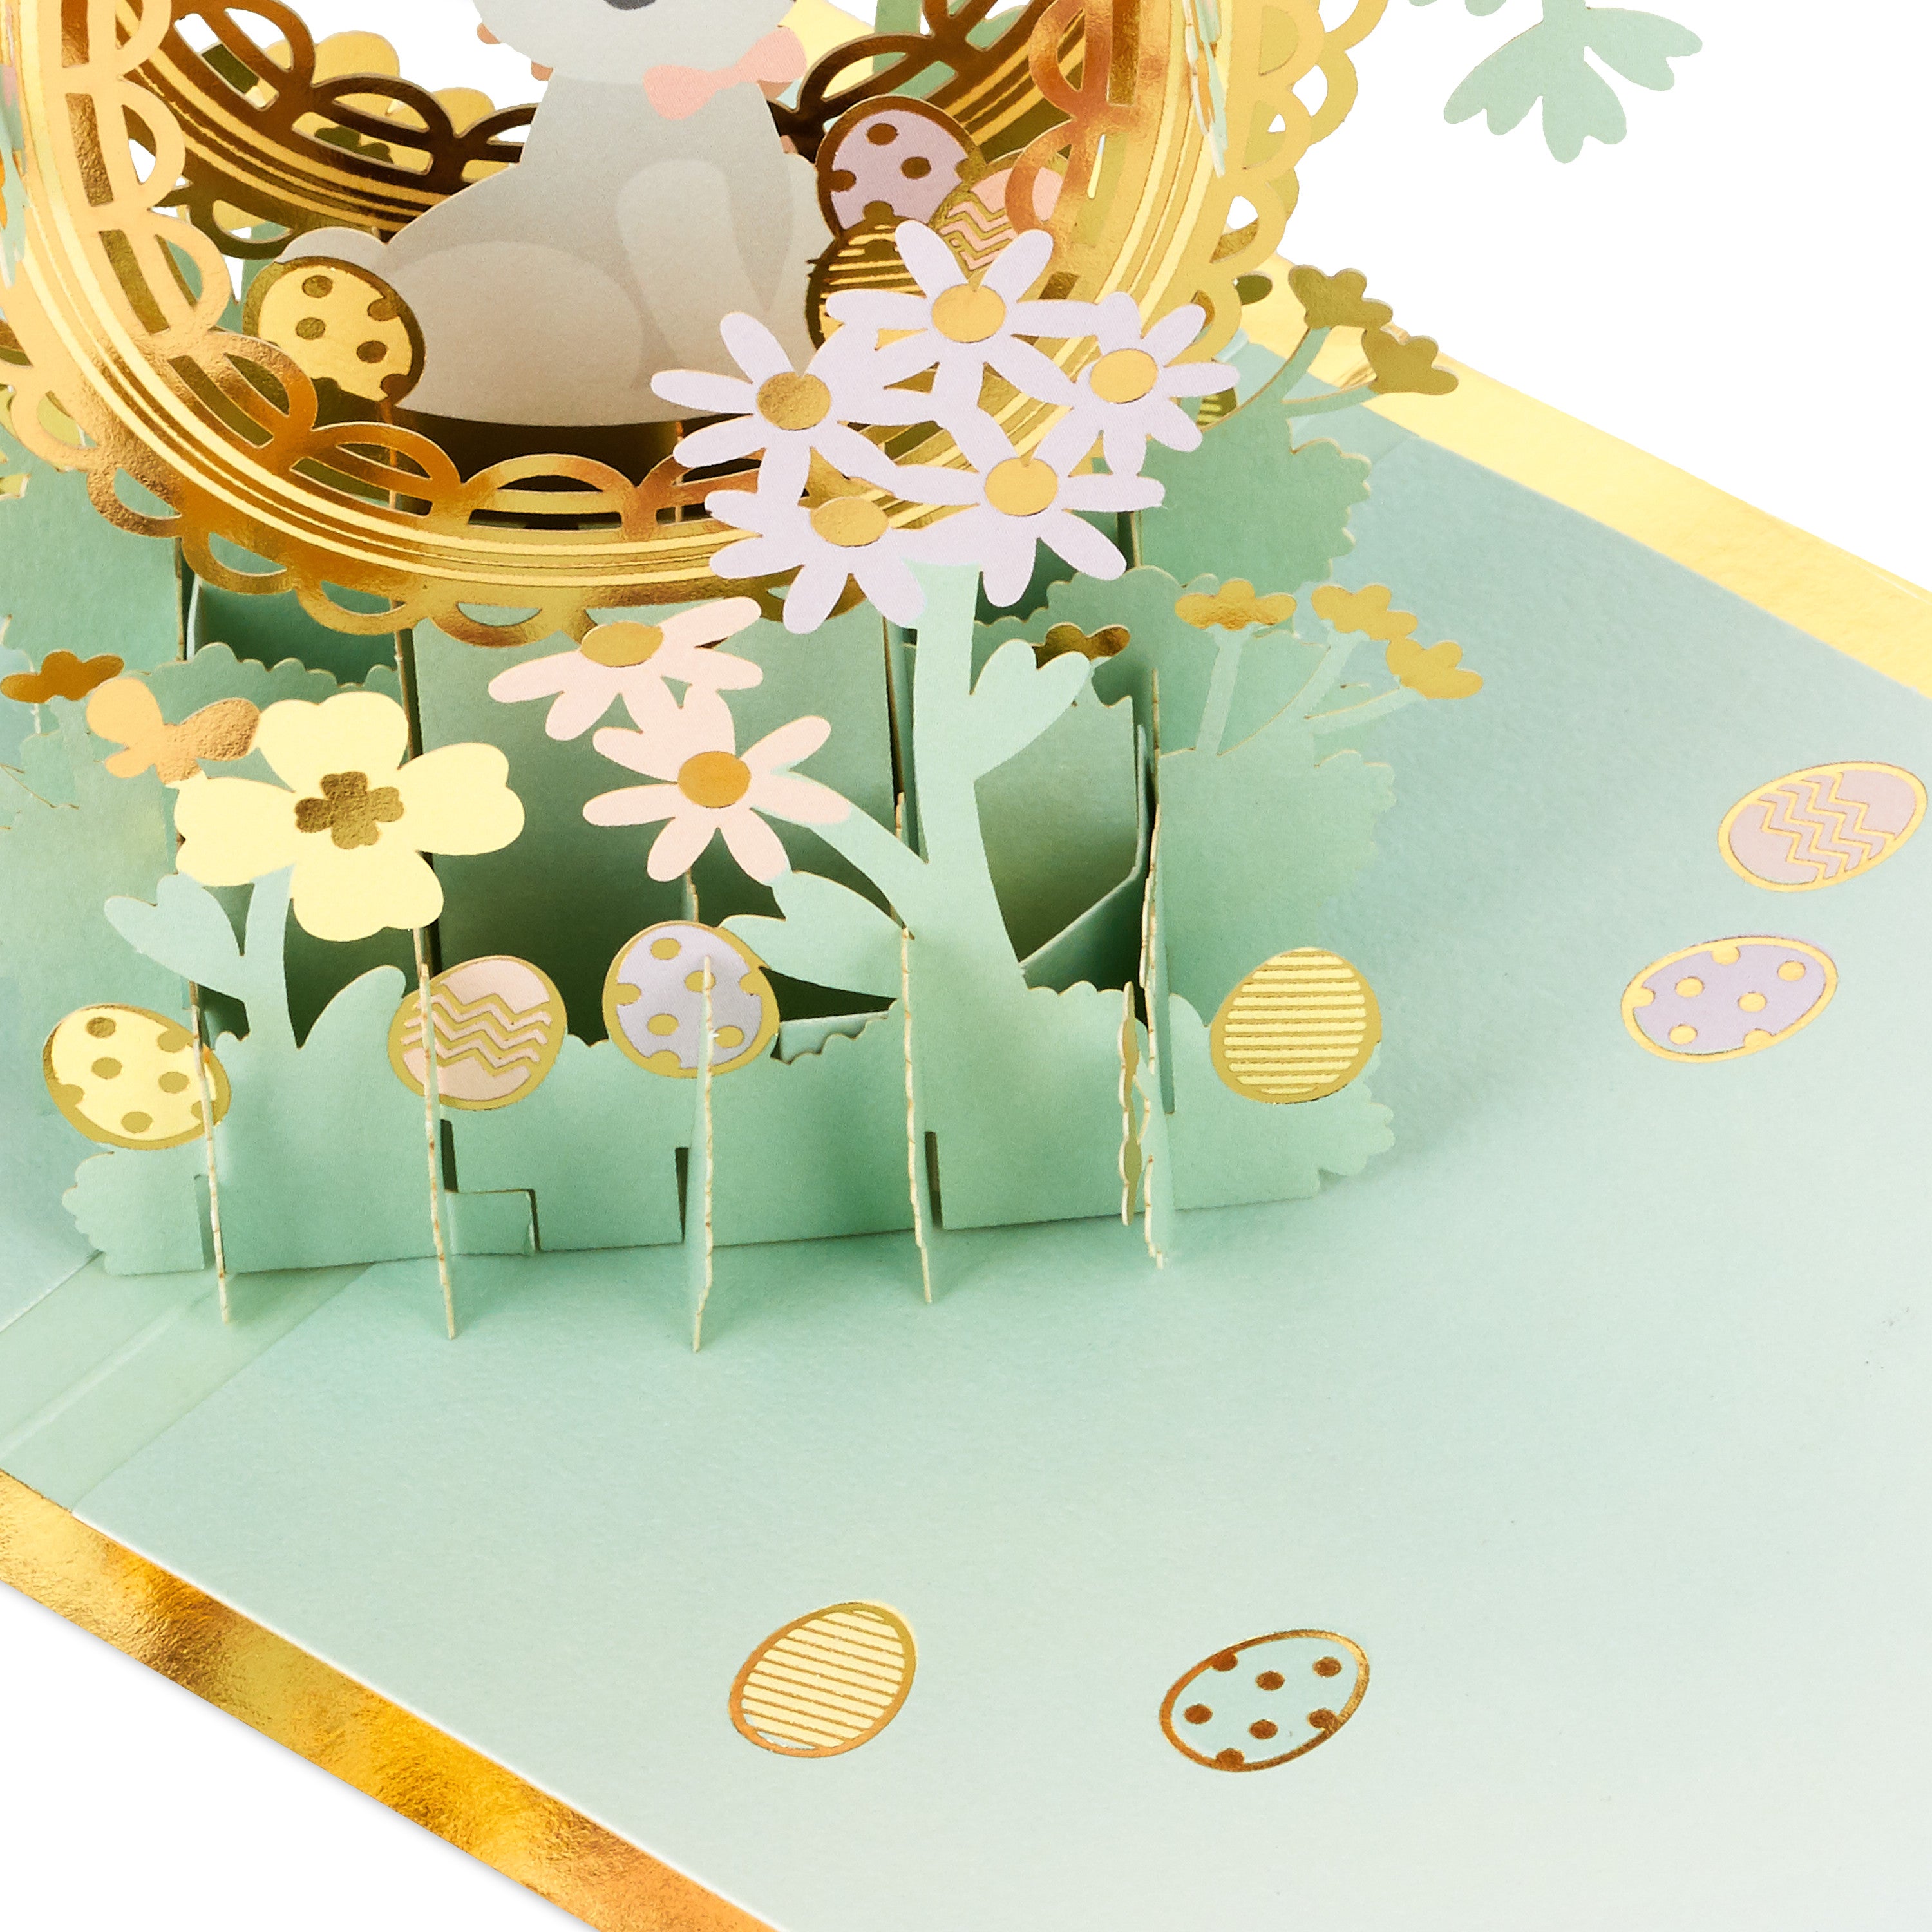 Hallmark Signature Paper Wonder Pop Up Easter Card (Easter Egg)